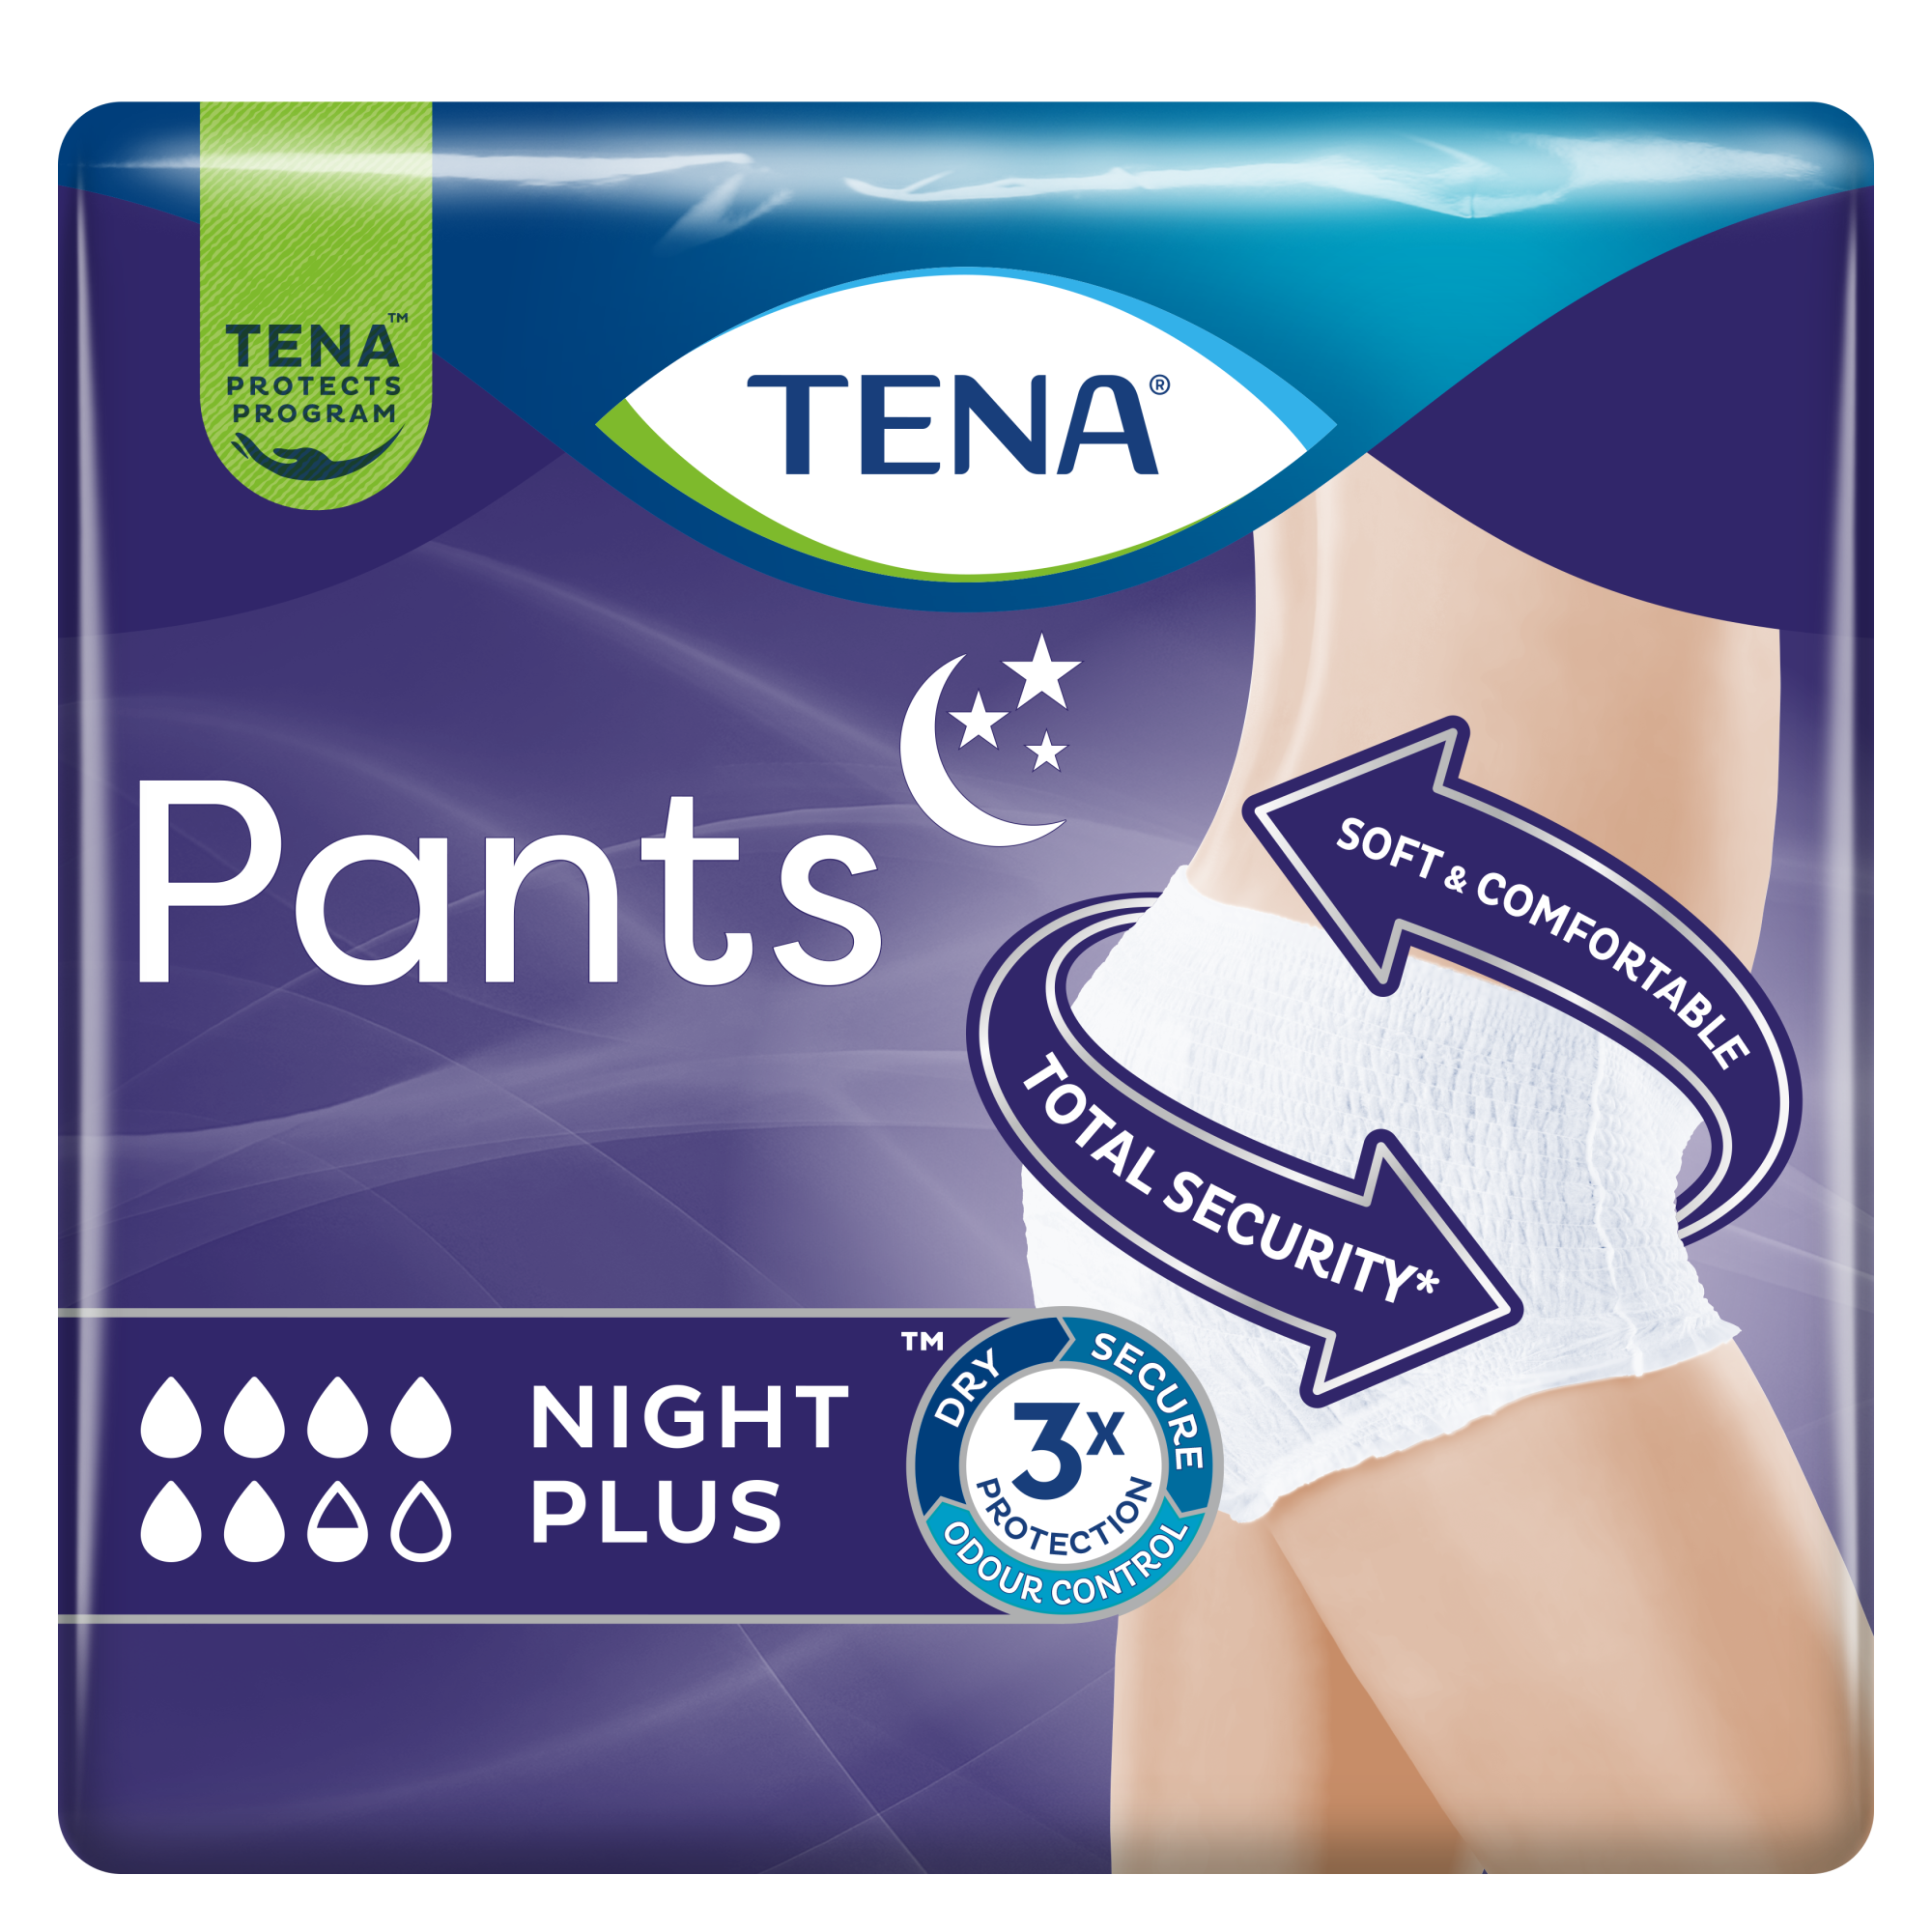 TENA Pants Night Super L buy online